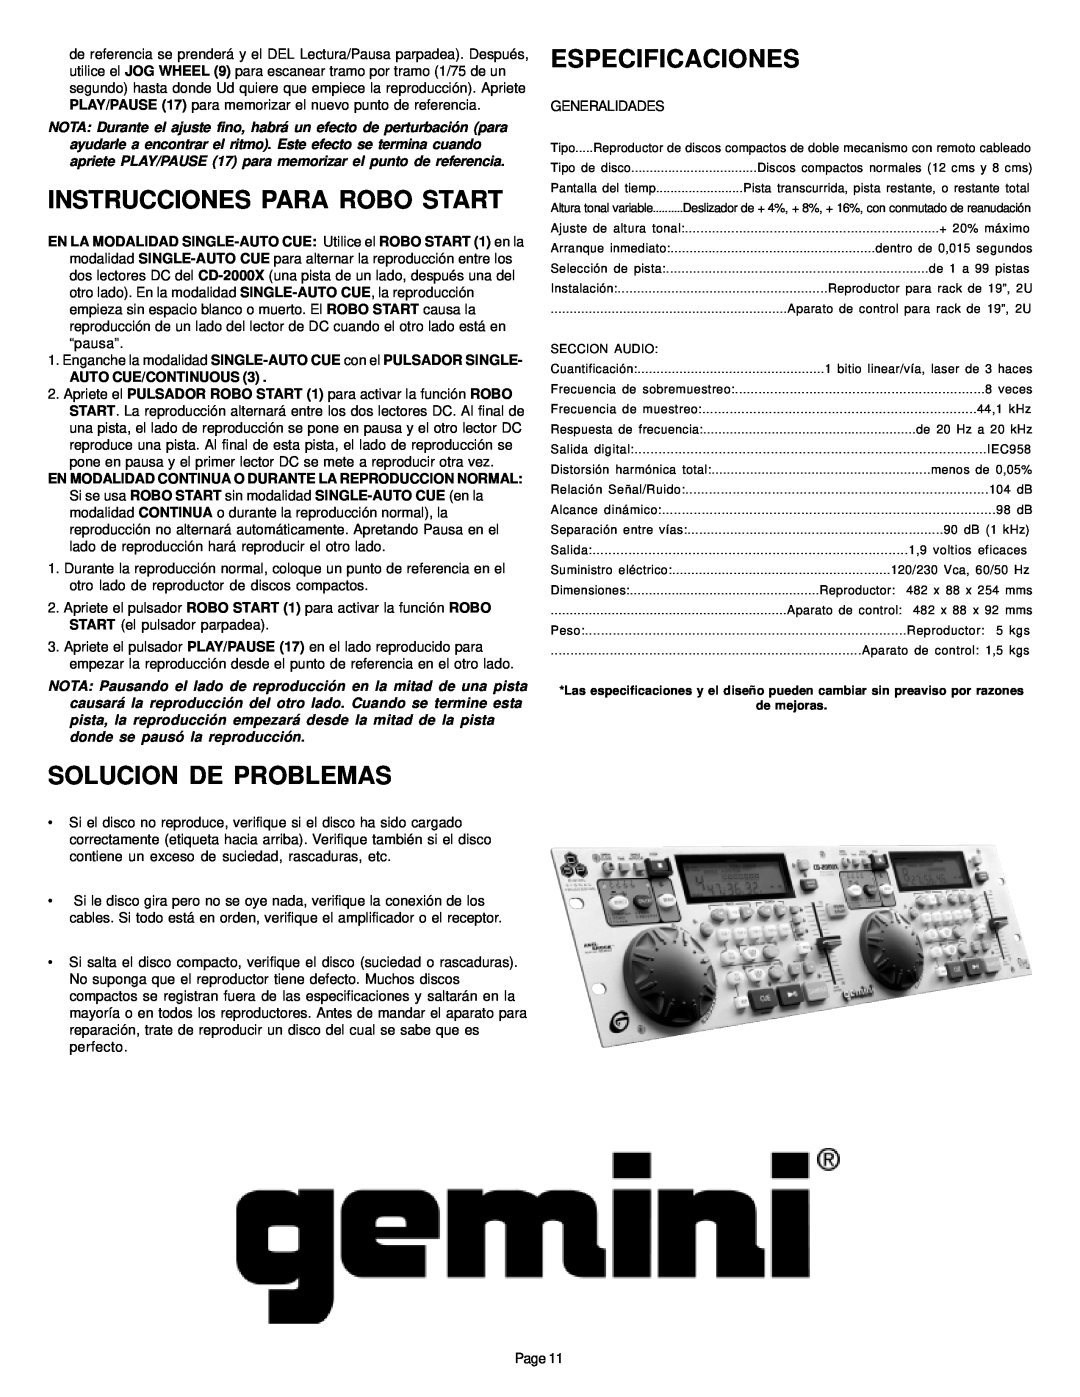 Gemini CD-2000X manual Instrucciones Para Robo Start, Solucion De Problemas, Especificaciones 